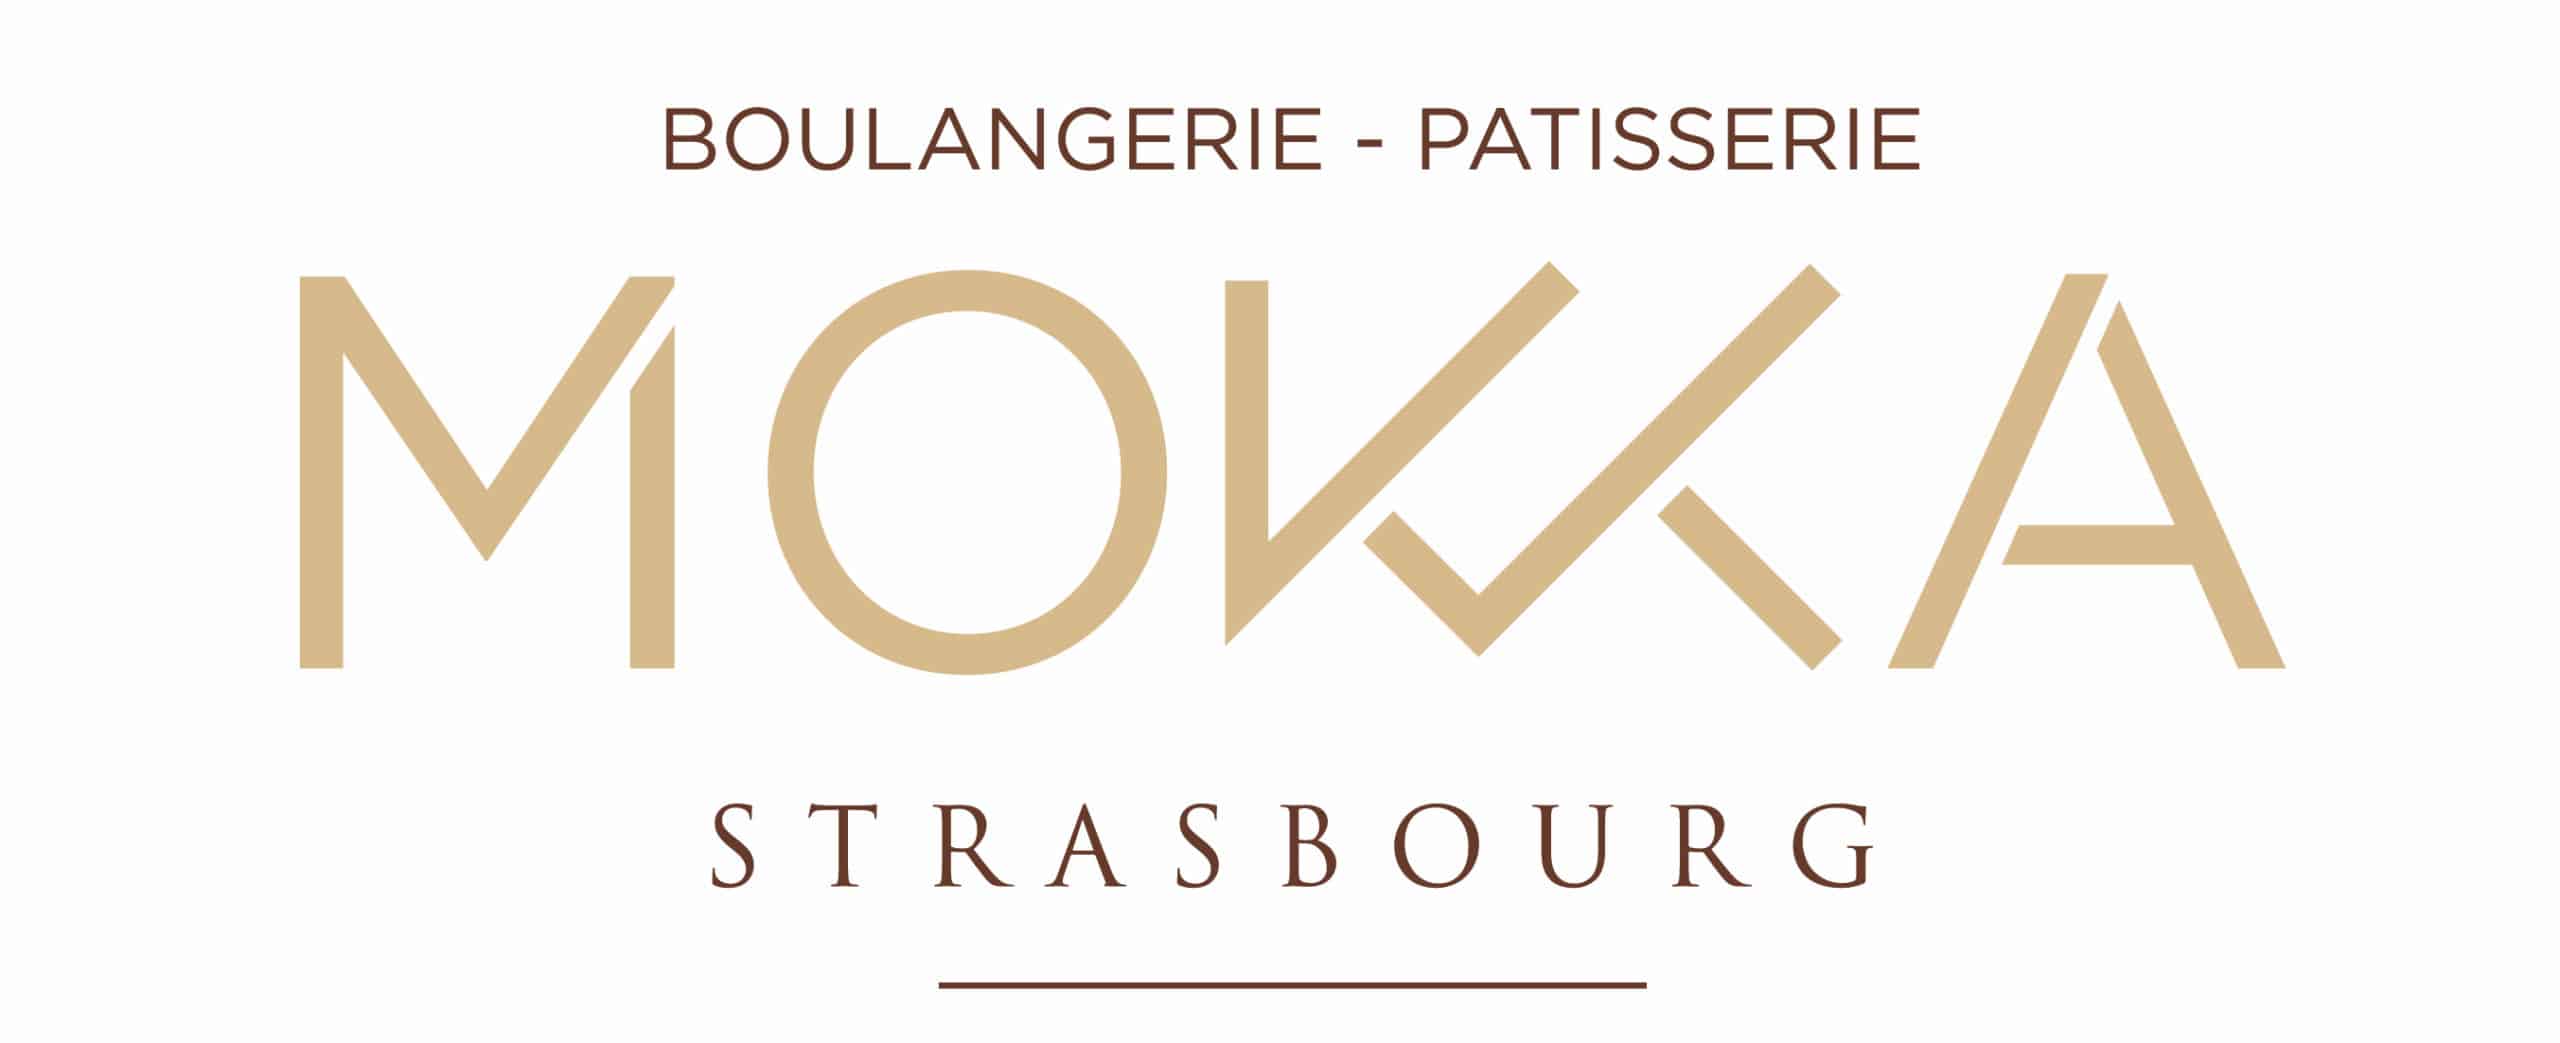 Mokka Strasburgo - Logo